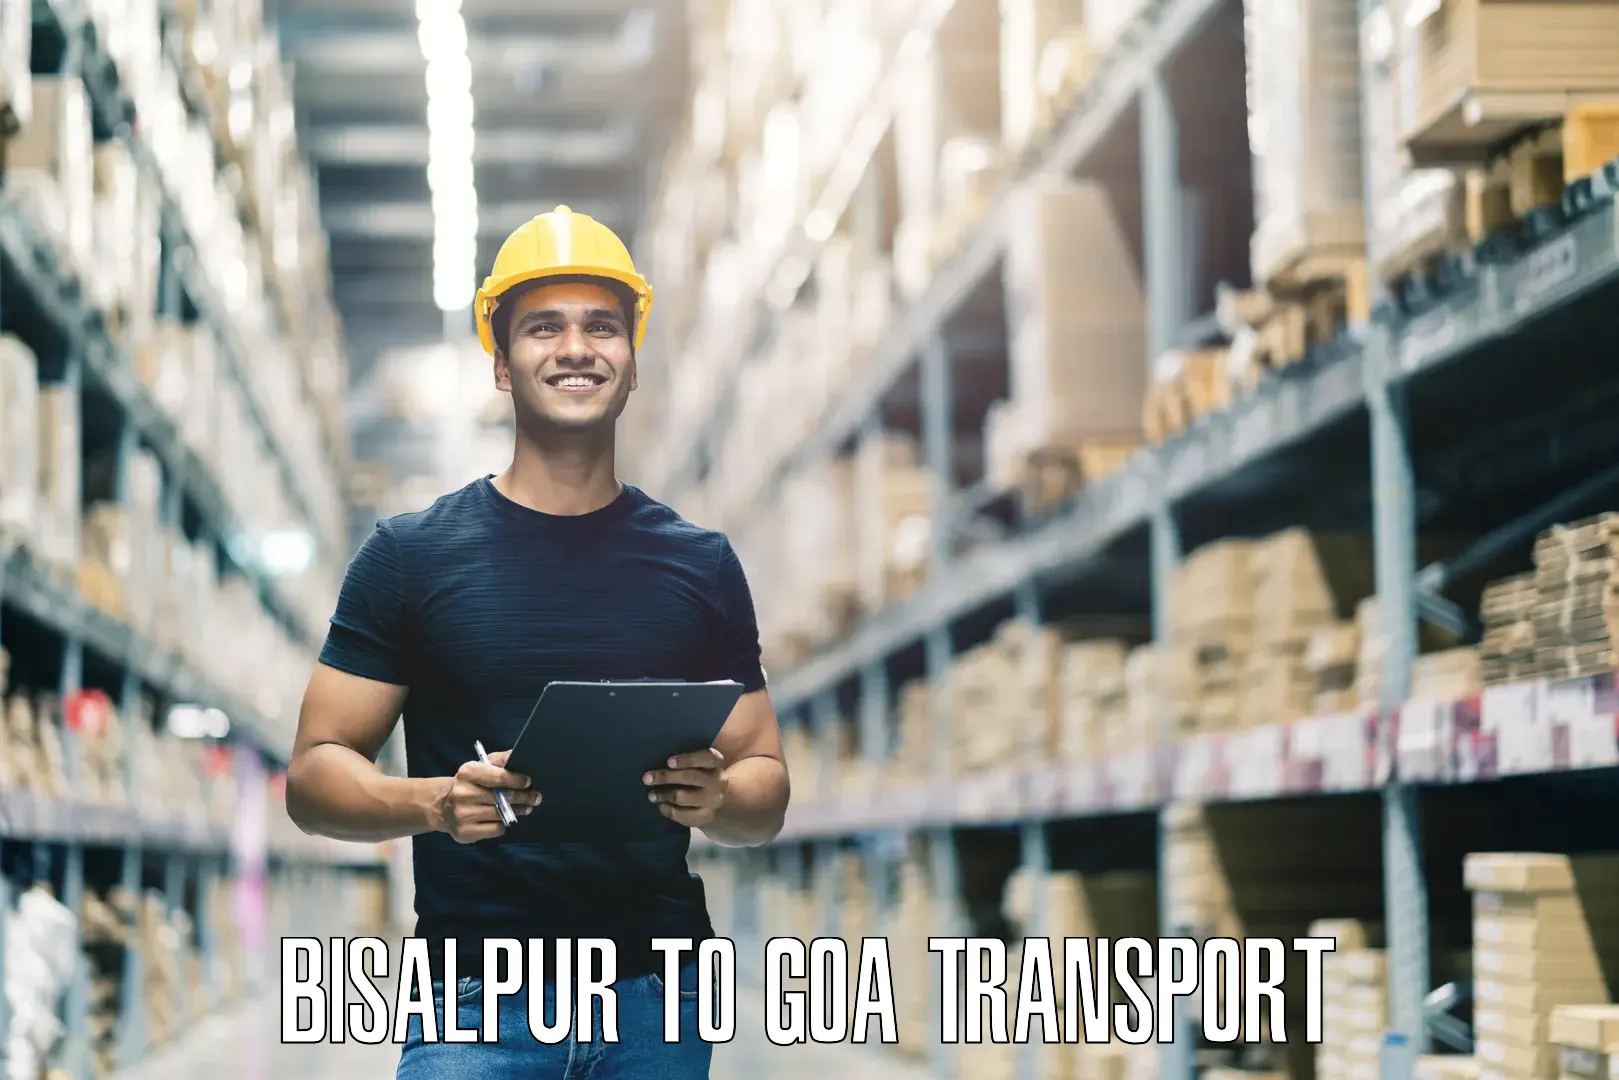 Commercial transport service Bisalpur to Vasco da Gama